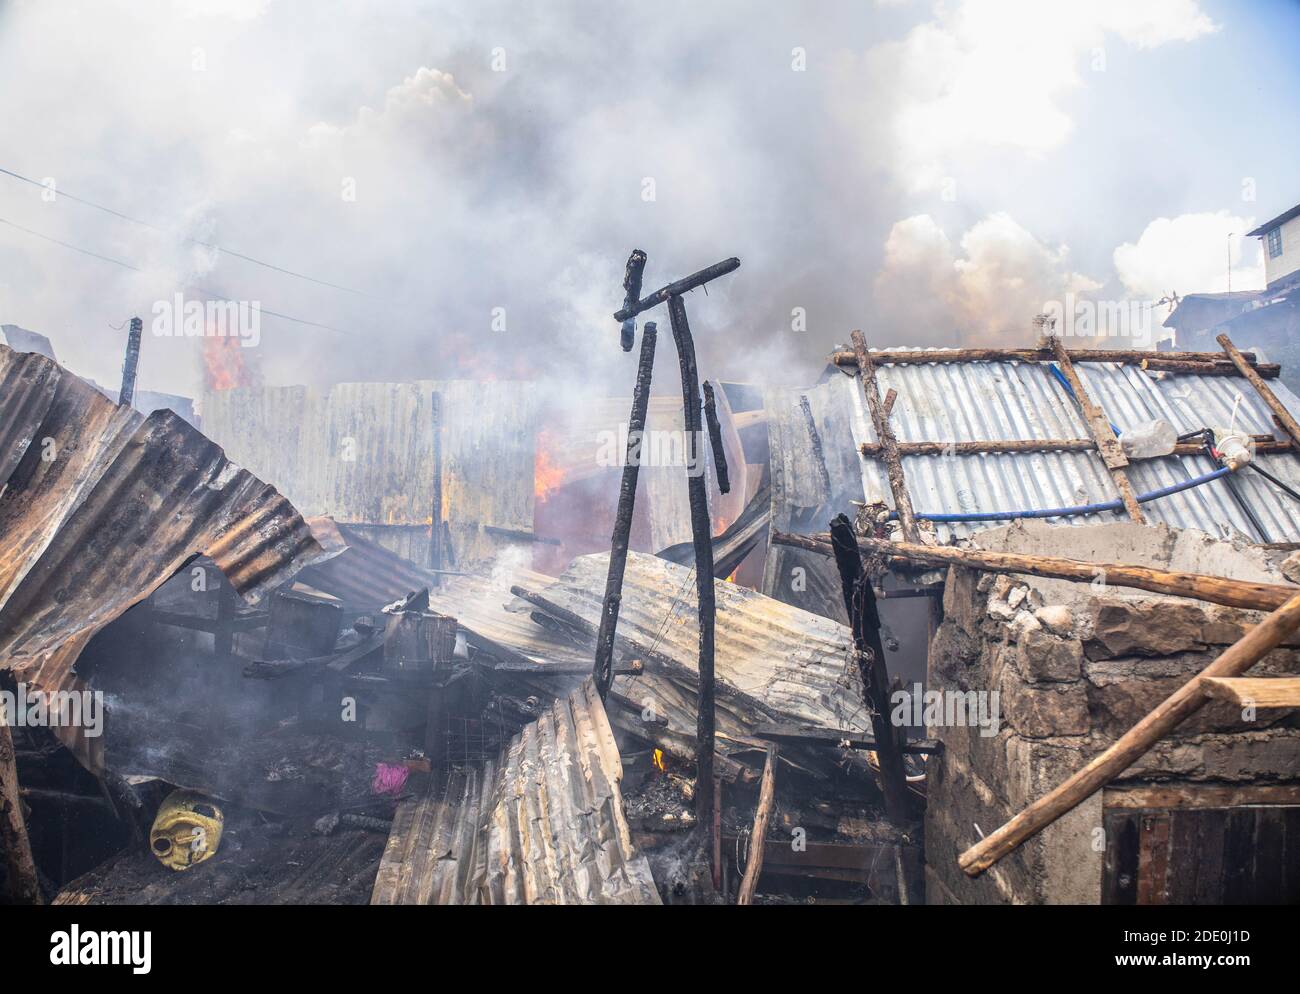 In den Slums von Kibera brennen Häuser nach einem schweren Brand, der durch einen illegalen Stromanschluss verursacht wurde.tief im Nachbargebiet Soweto in den Slums von Kibera erlebten die Bewohner einen harten verrückten Moment, nachdem eine Belagerung durch einen illegalen Stromanschluss dreißig Häuser niederschmettern ließ und die meisten Bewohner obdachlos wurden. Die meisten Einheimischen schlossen sich den Händen an, um das Feuer zu löschen, aber leider konnte nichts gerettet werden, aber es gab keine Menschenleben in der Situation. Stockfoto